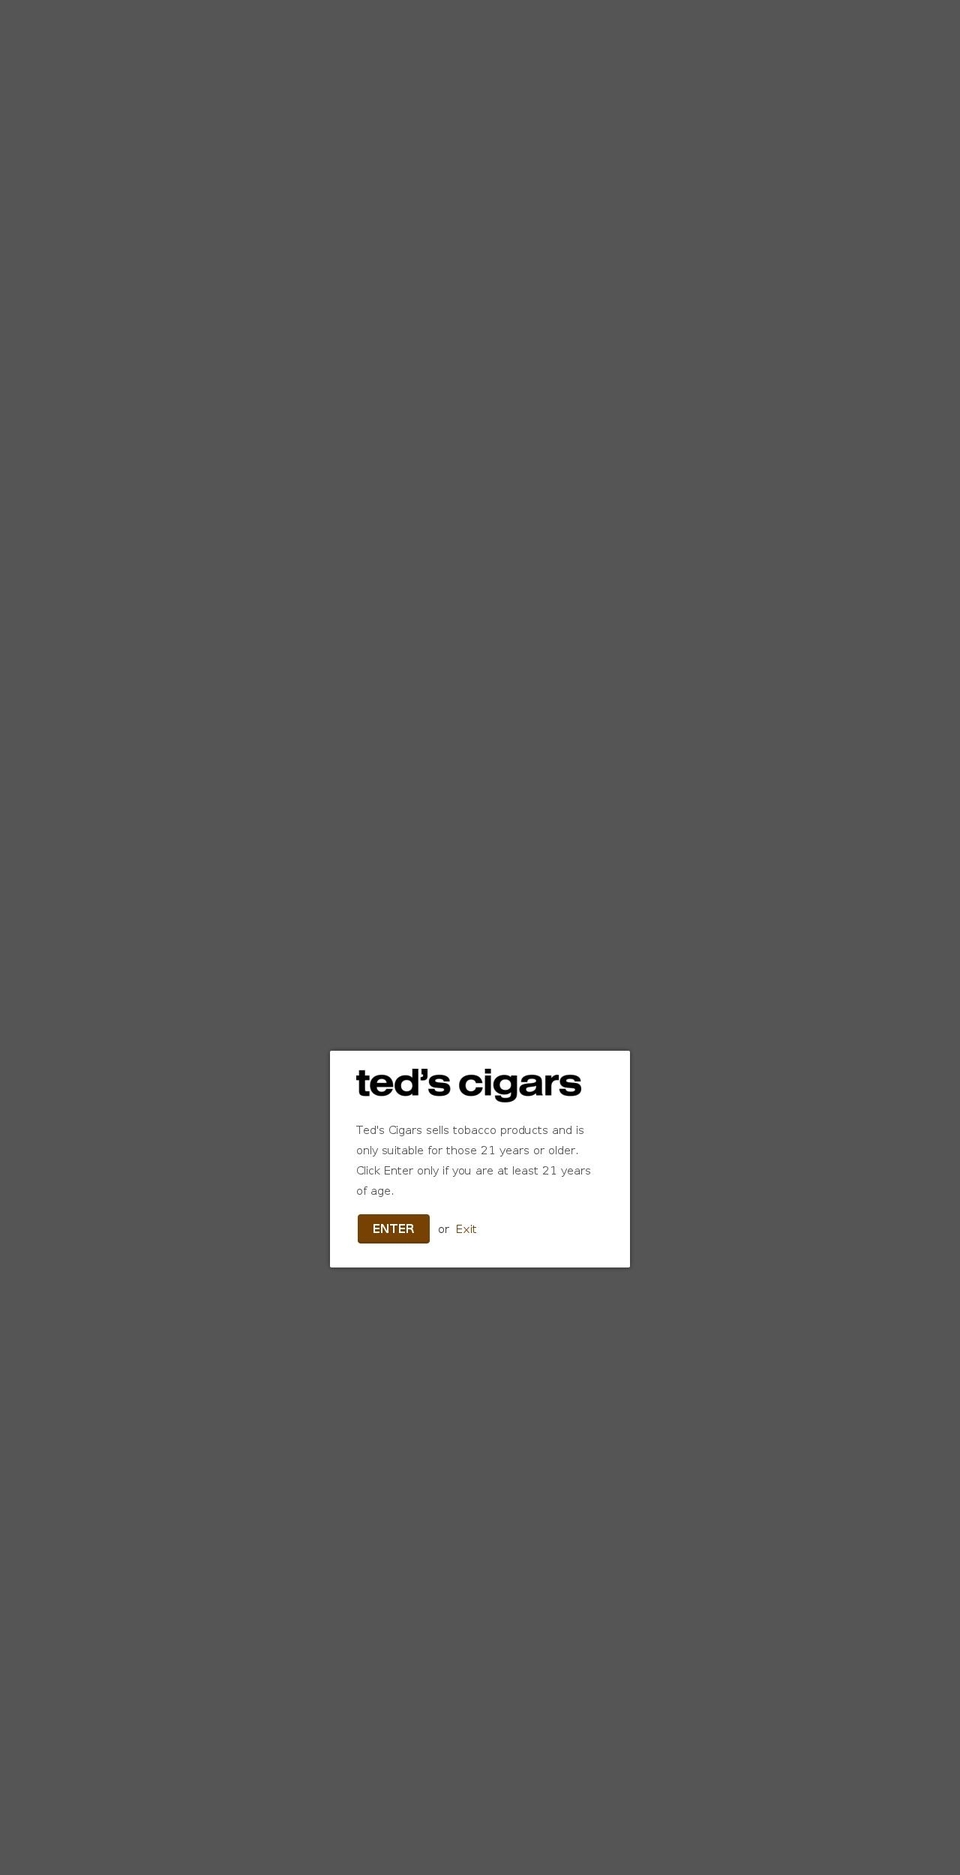 tedscigars.com shopify website screenshot